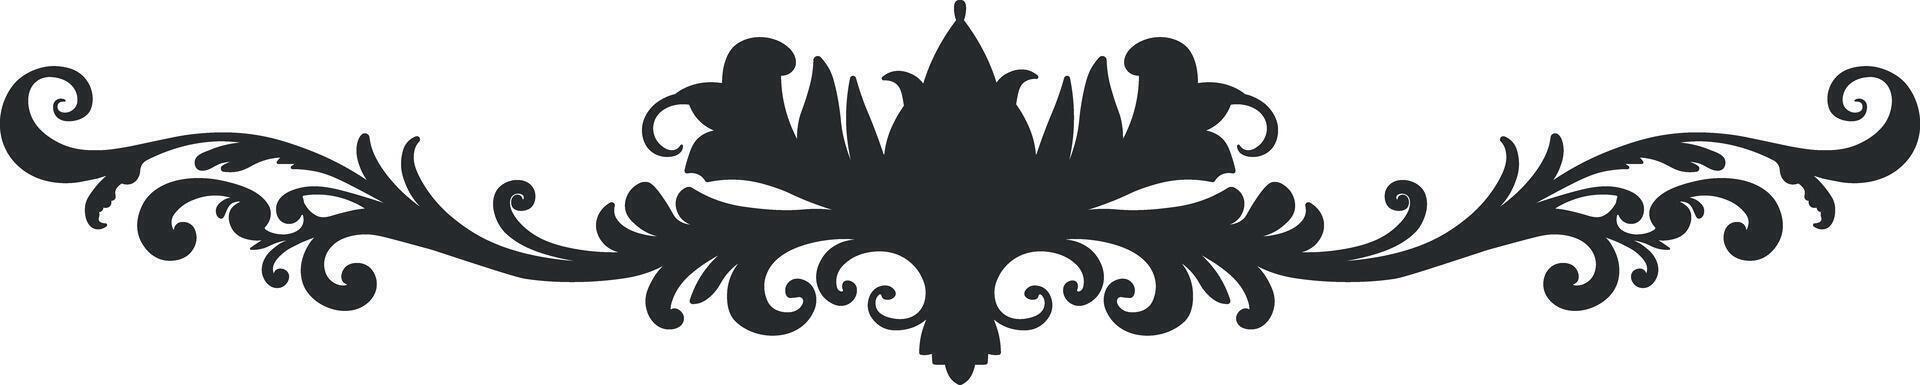 zwart en wit ornament patroon zonder achtergrond vector